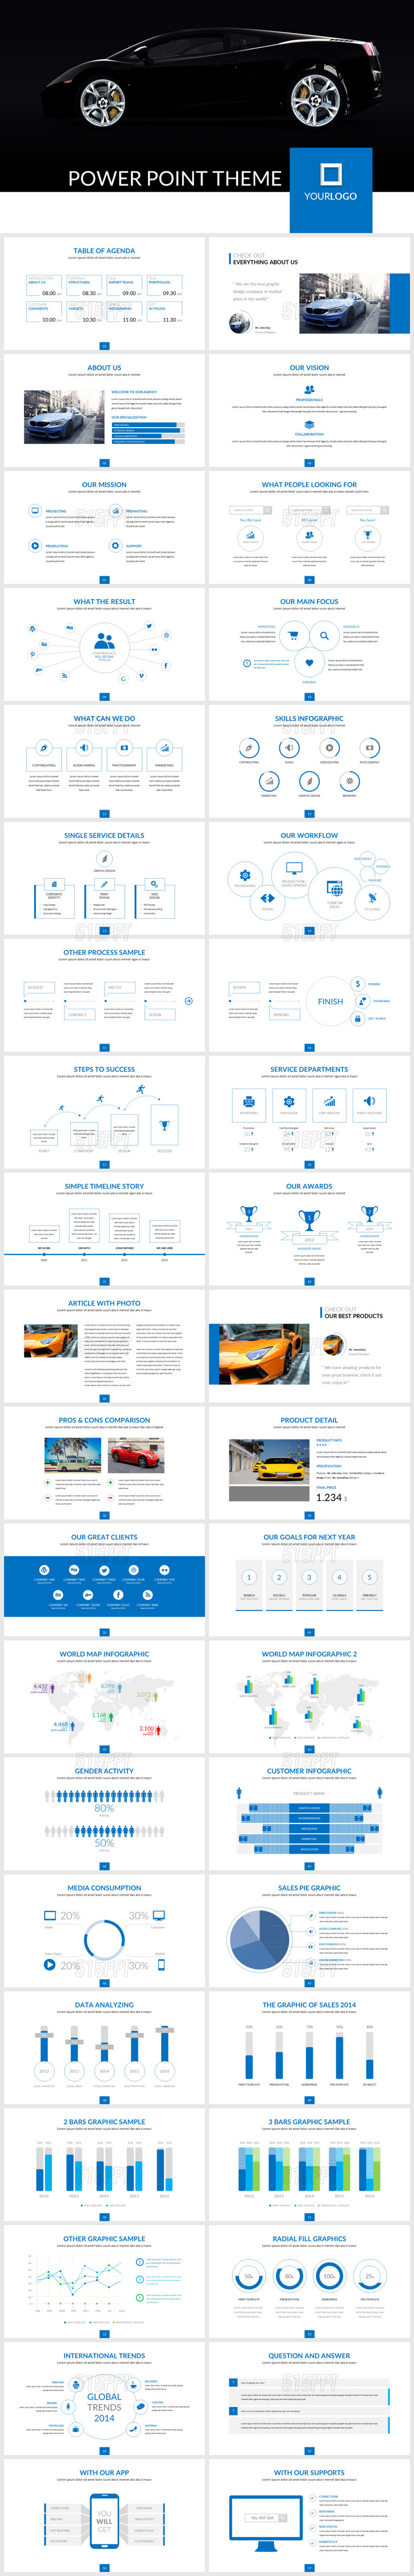 汽车全英文版公司介绍及产品宣传技术公布PPT模版